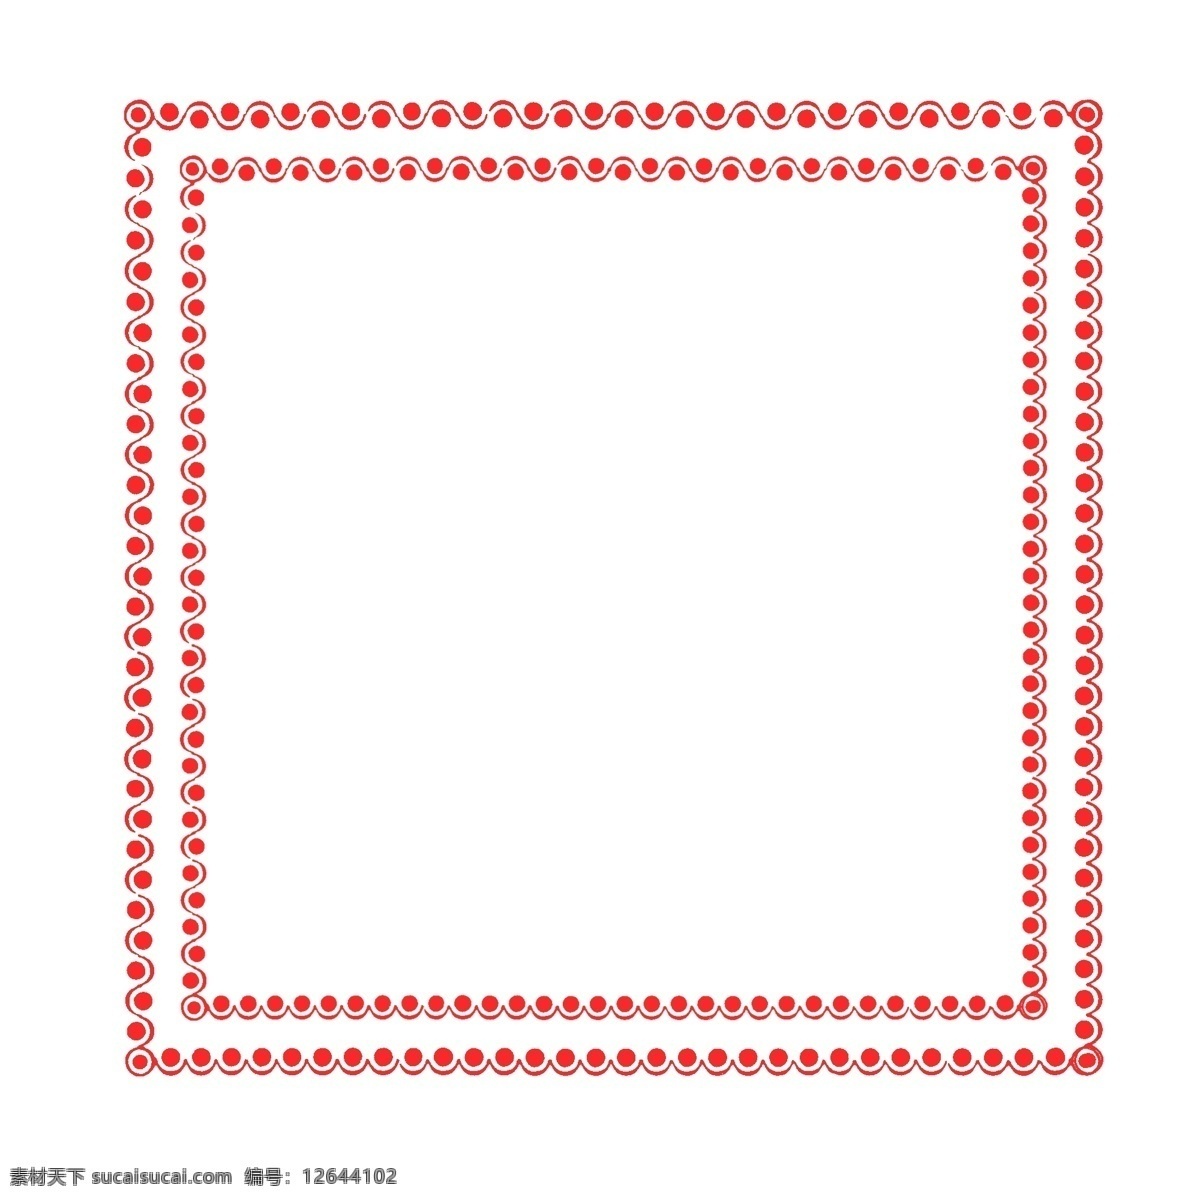 正方形 大红 边框 装饰 商务 封面 插图 简约 中国风 红点 海报 简洁 大气 经典 方形